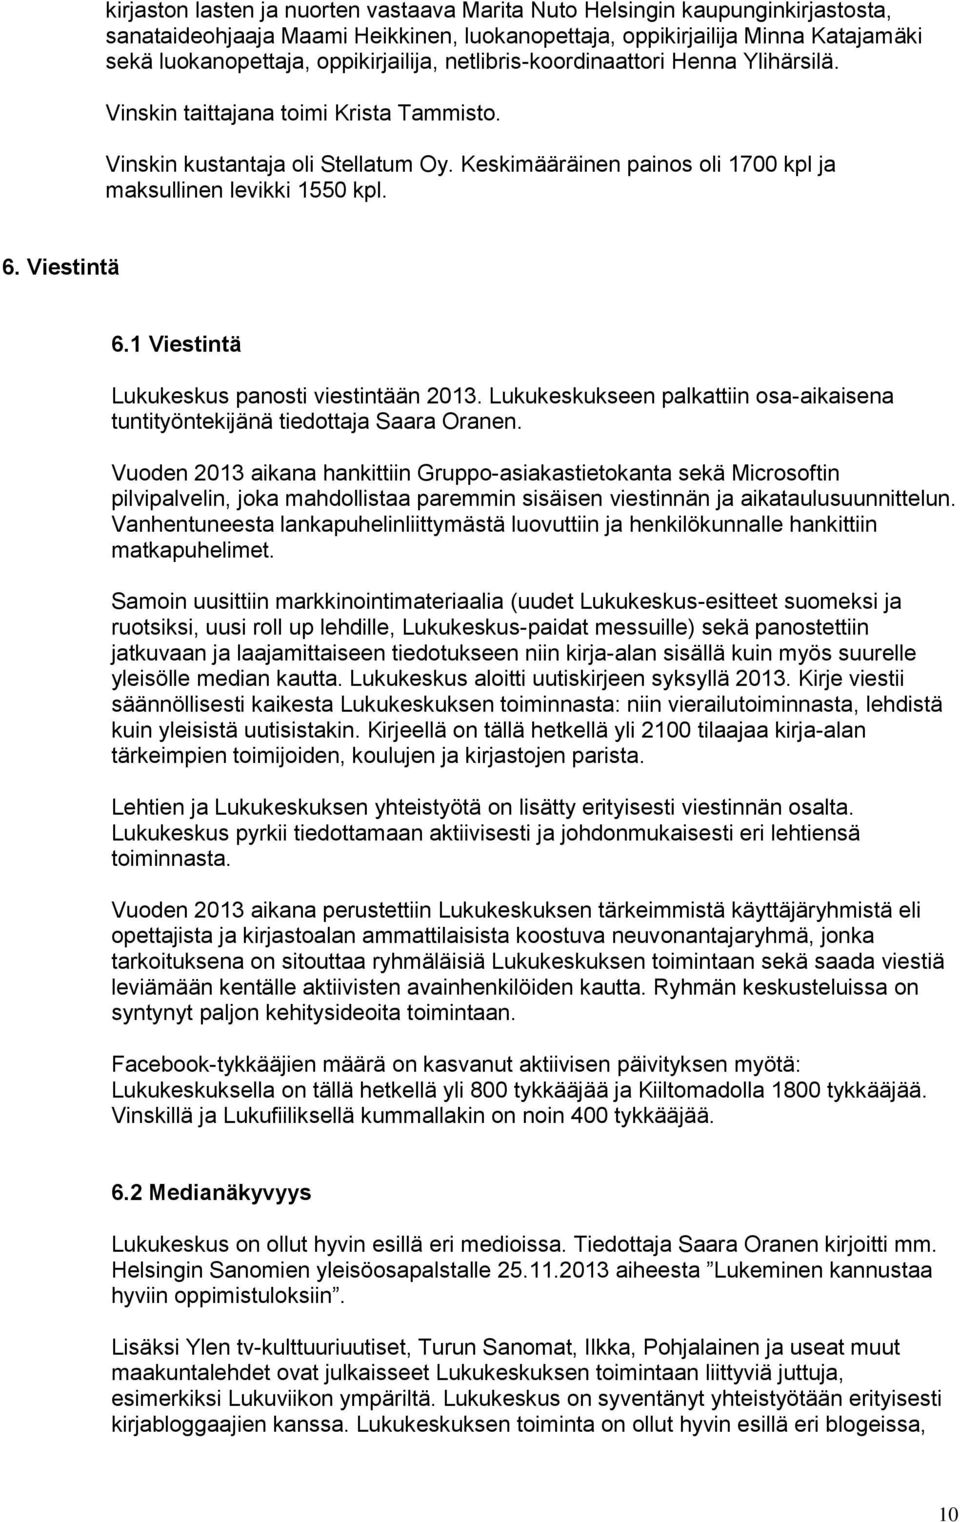 Viestintä 6.1 Viestintä Lukukeskus panosti viestintään 2013. Lukukeskukseen palkattiin osa-aikaisena tuntityöntekijänä tiedottaja Saara Oranen.